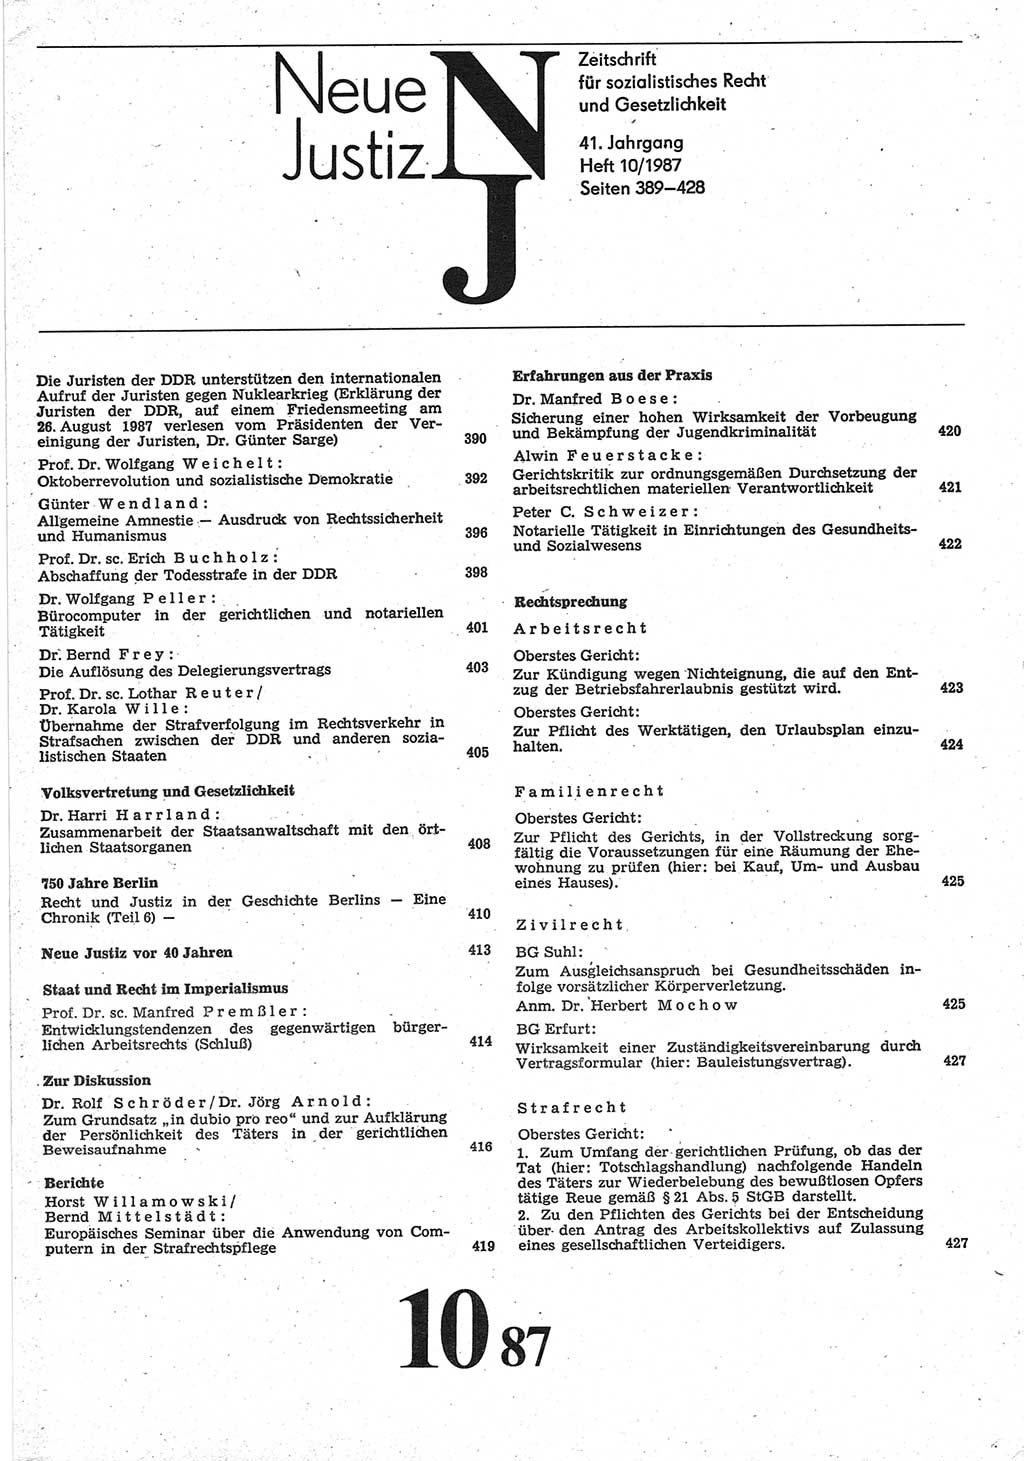 Neue Justiz (NJ), Zeitschrift für sozialistisches Recht und Gesetzlichkeit [Deutsche Demokratische Republik (DDR)], 41. Jahrgang 1987, Seite 389 (NJ DDR 1987, S. 389)